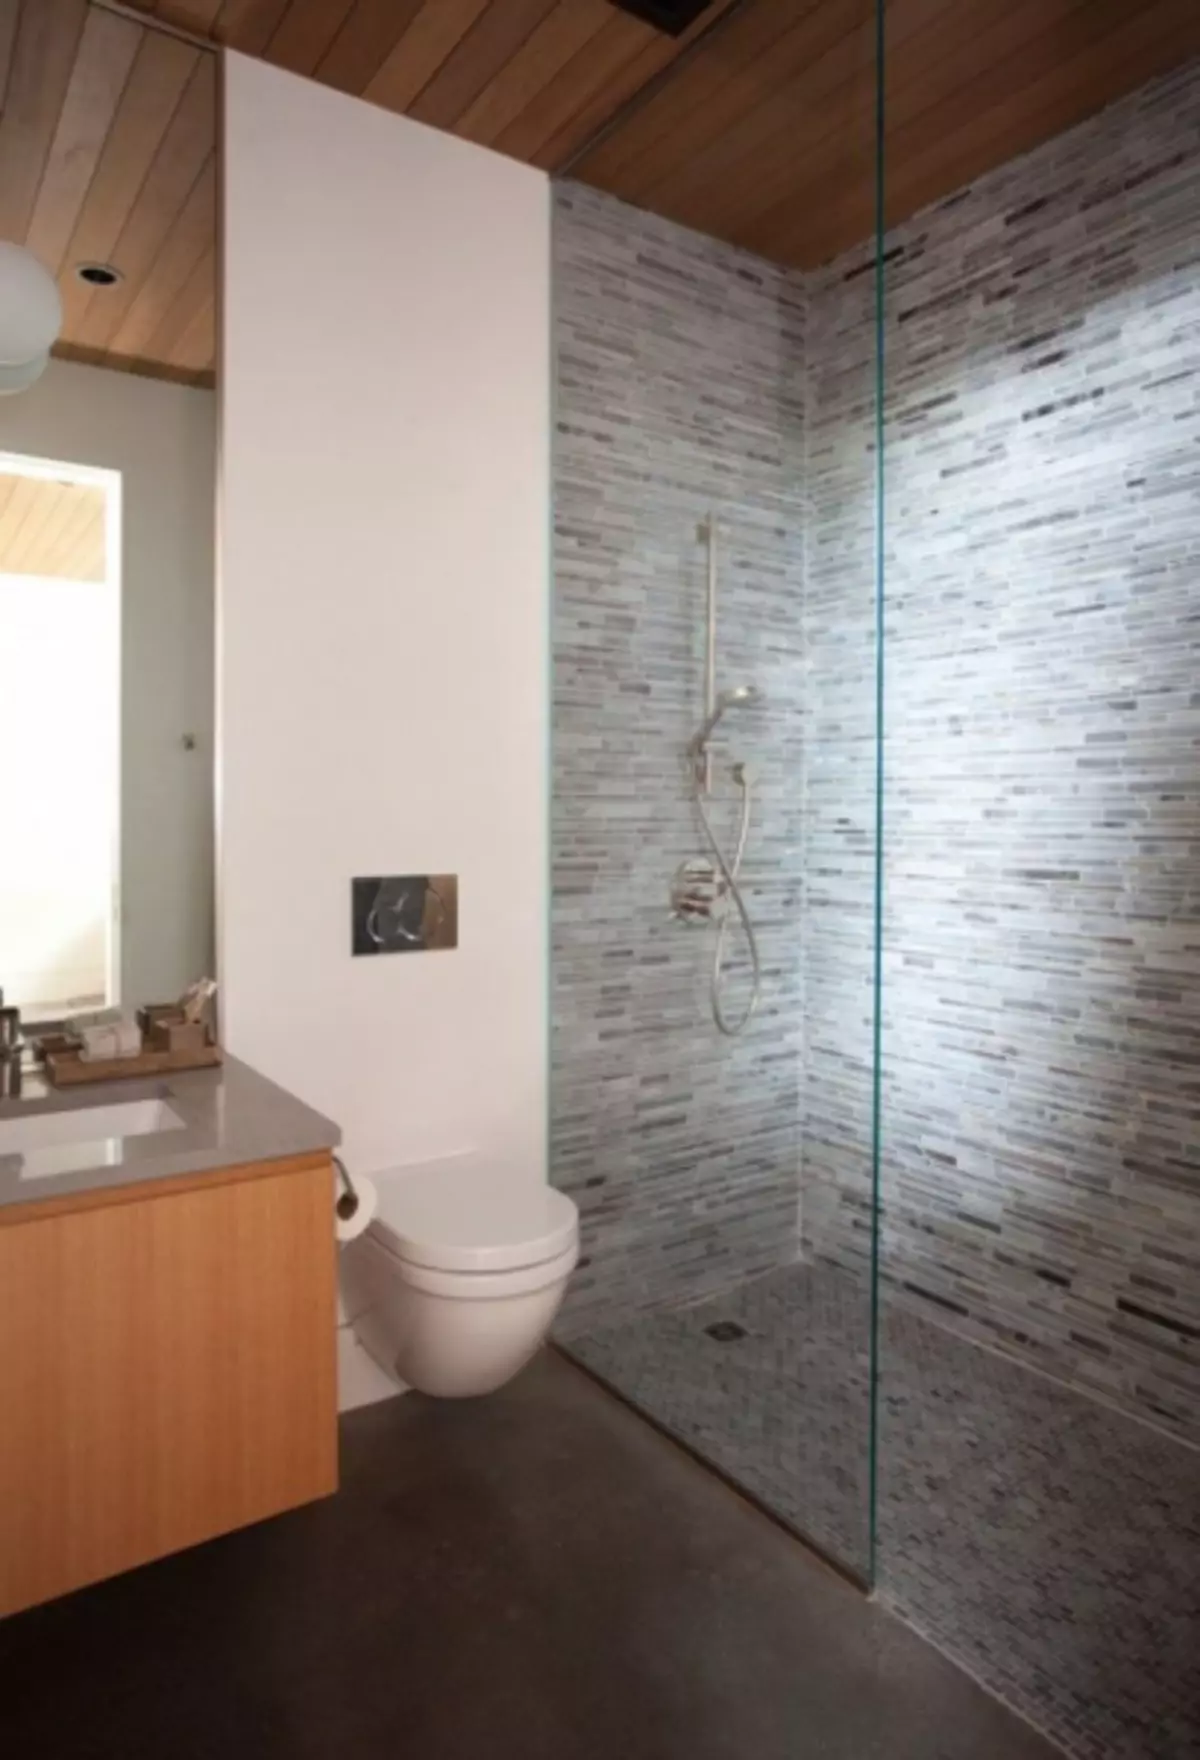 બાથરૂમ આંતરિક ટોઇલેટ સાથે જોડાય છે: નાના જગ્યા પર સુંદર અને વ્યવહારુ કેવી રીતે કરવું (38 ફોટા)